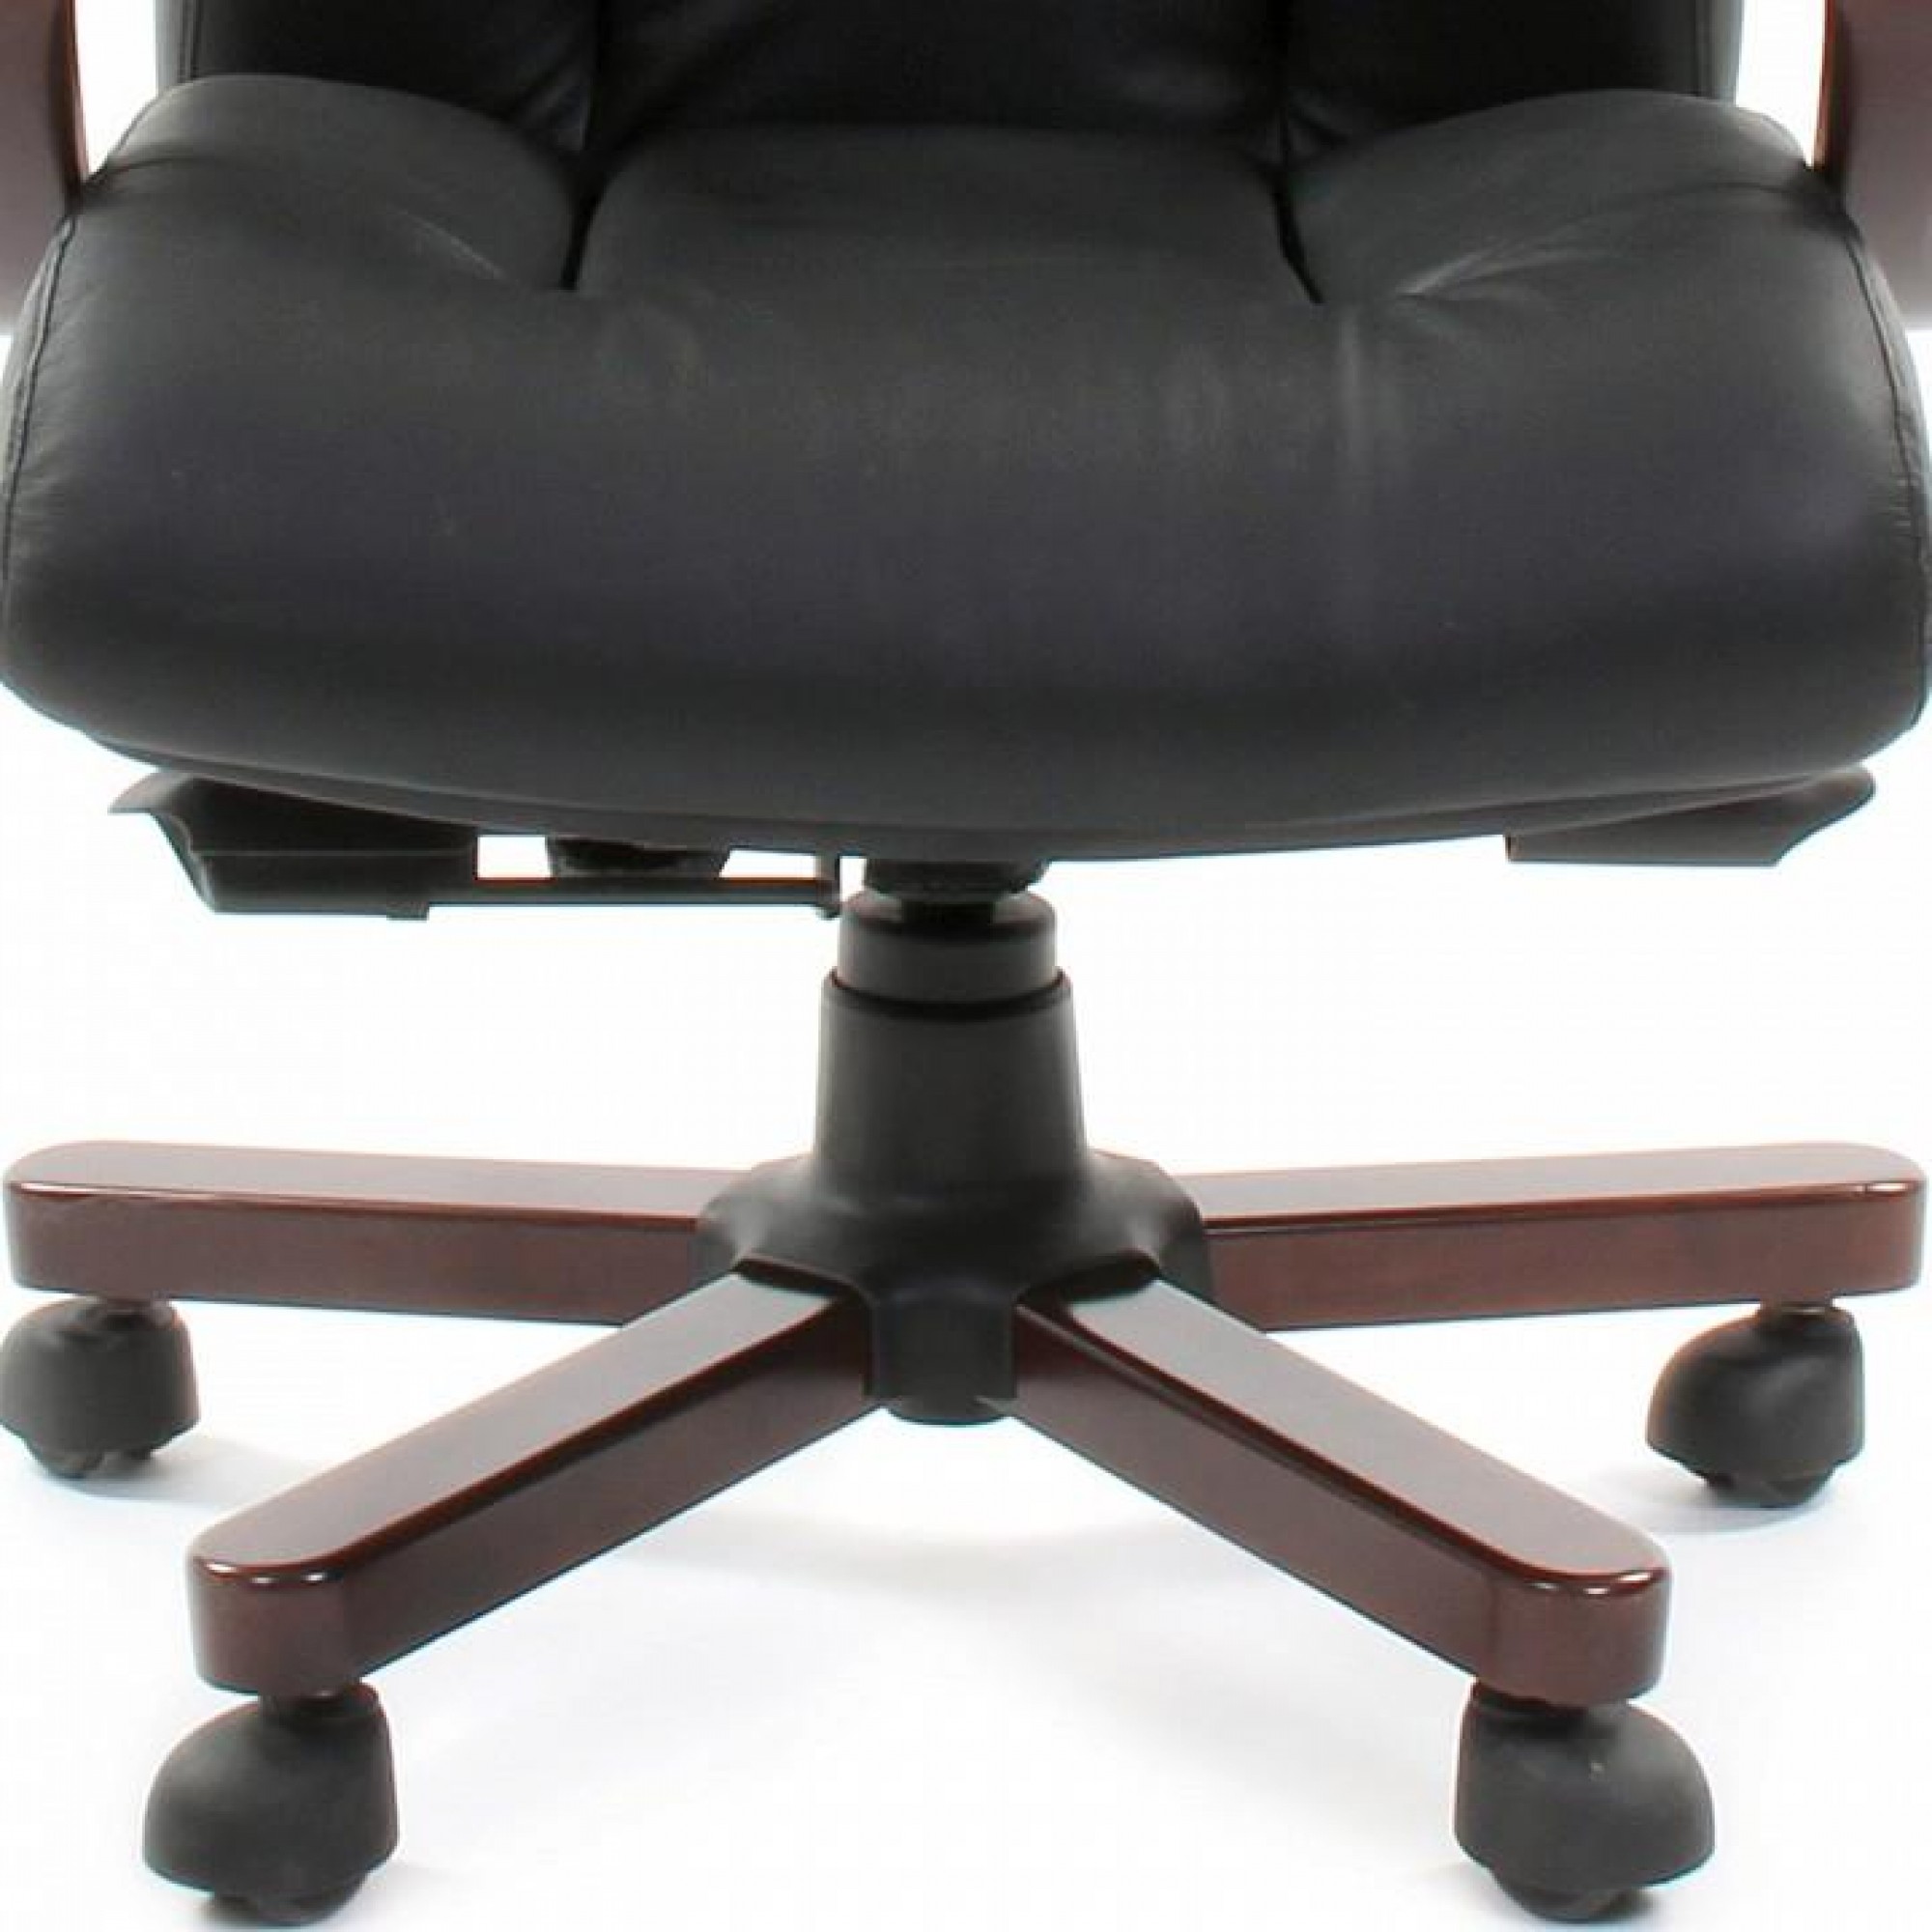 Кресло для руководителя Chairman 421 черный/орех темный, черный    CHA_6082595